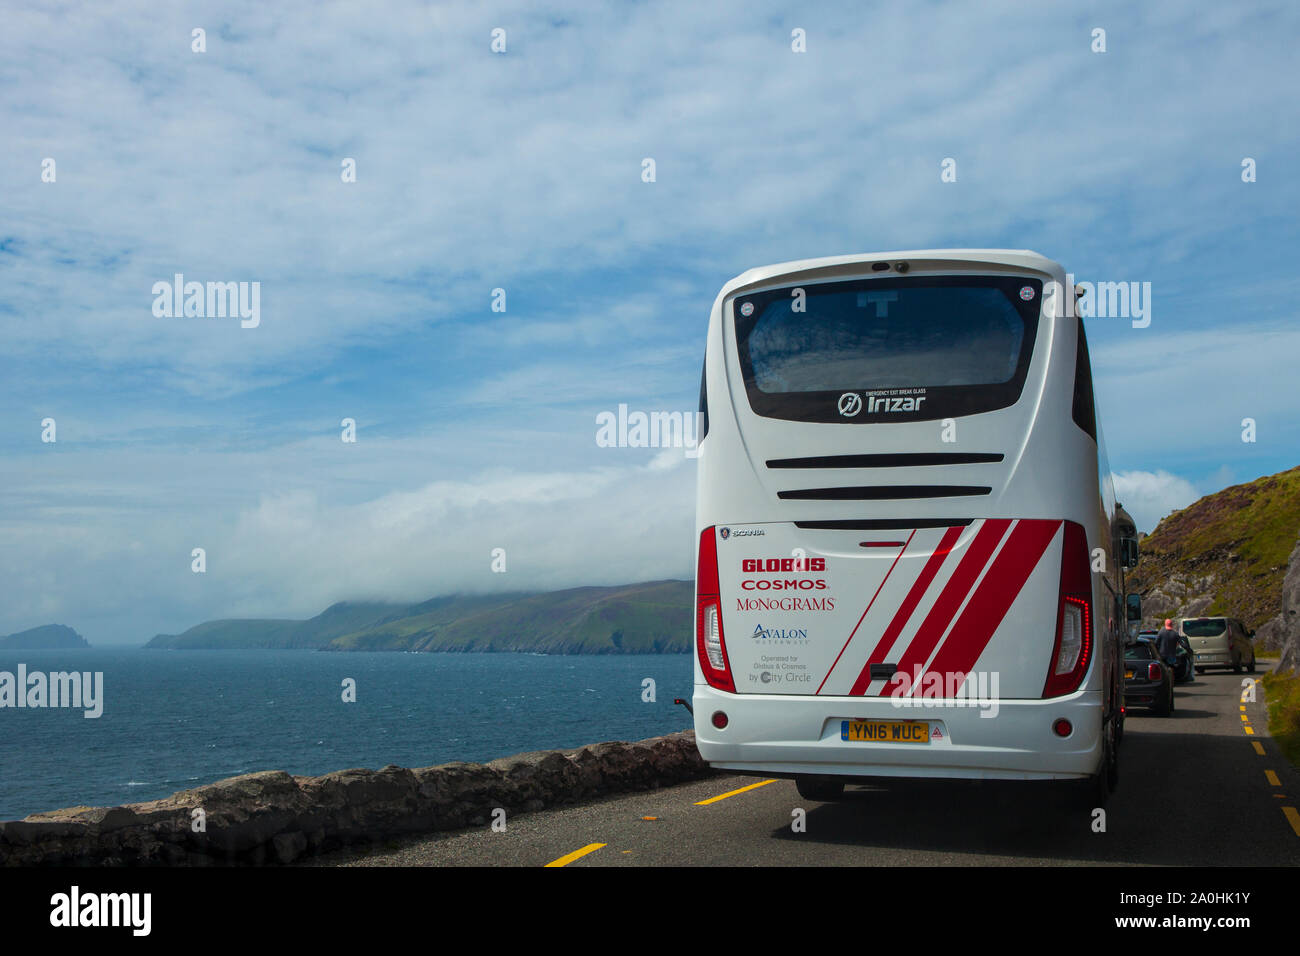 Inceppamento di traffico in paradiso - autobus turistico e traffico fermo sulla testa oneSlea, penisola di Dingle, Co. Kerry, Irlanda Foto Stock